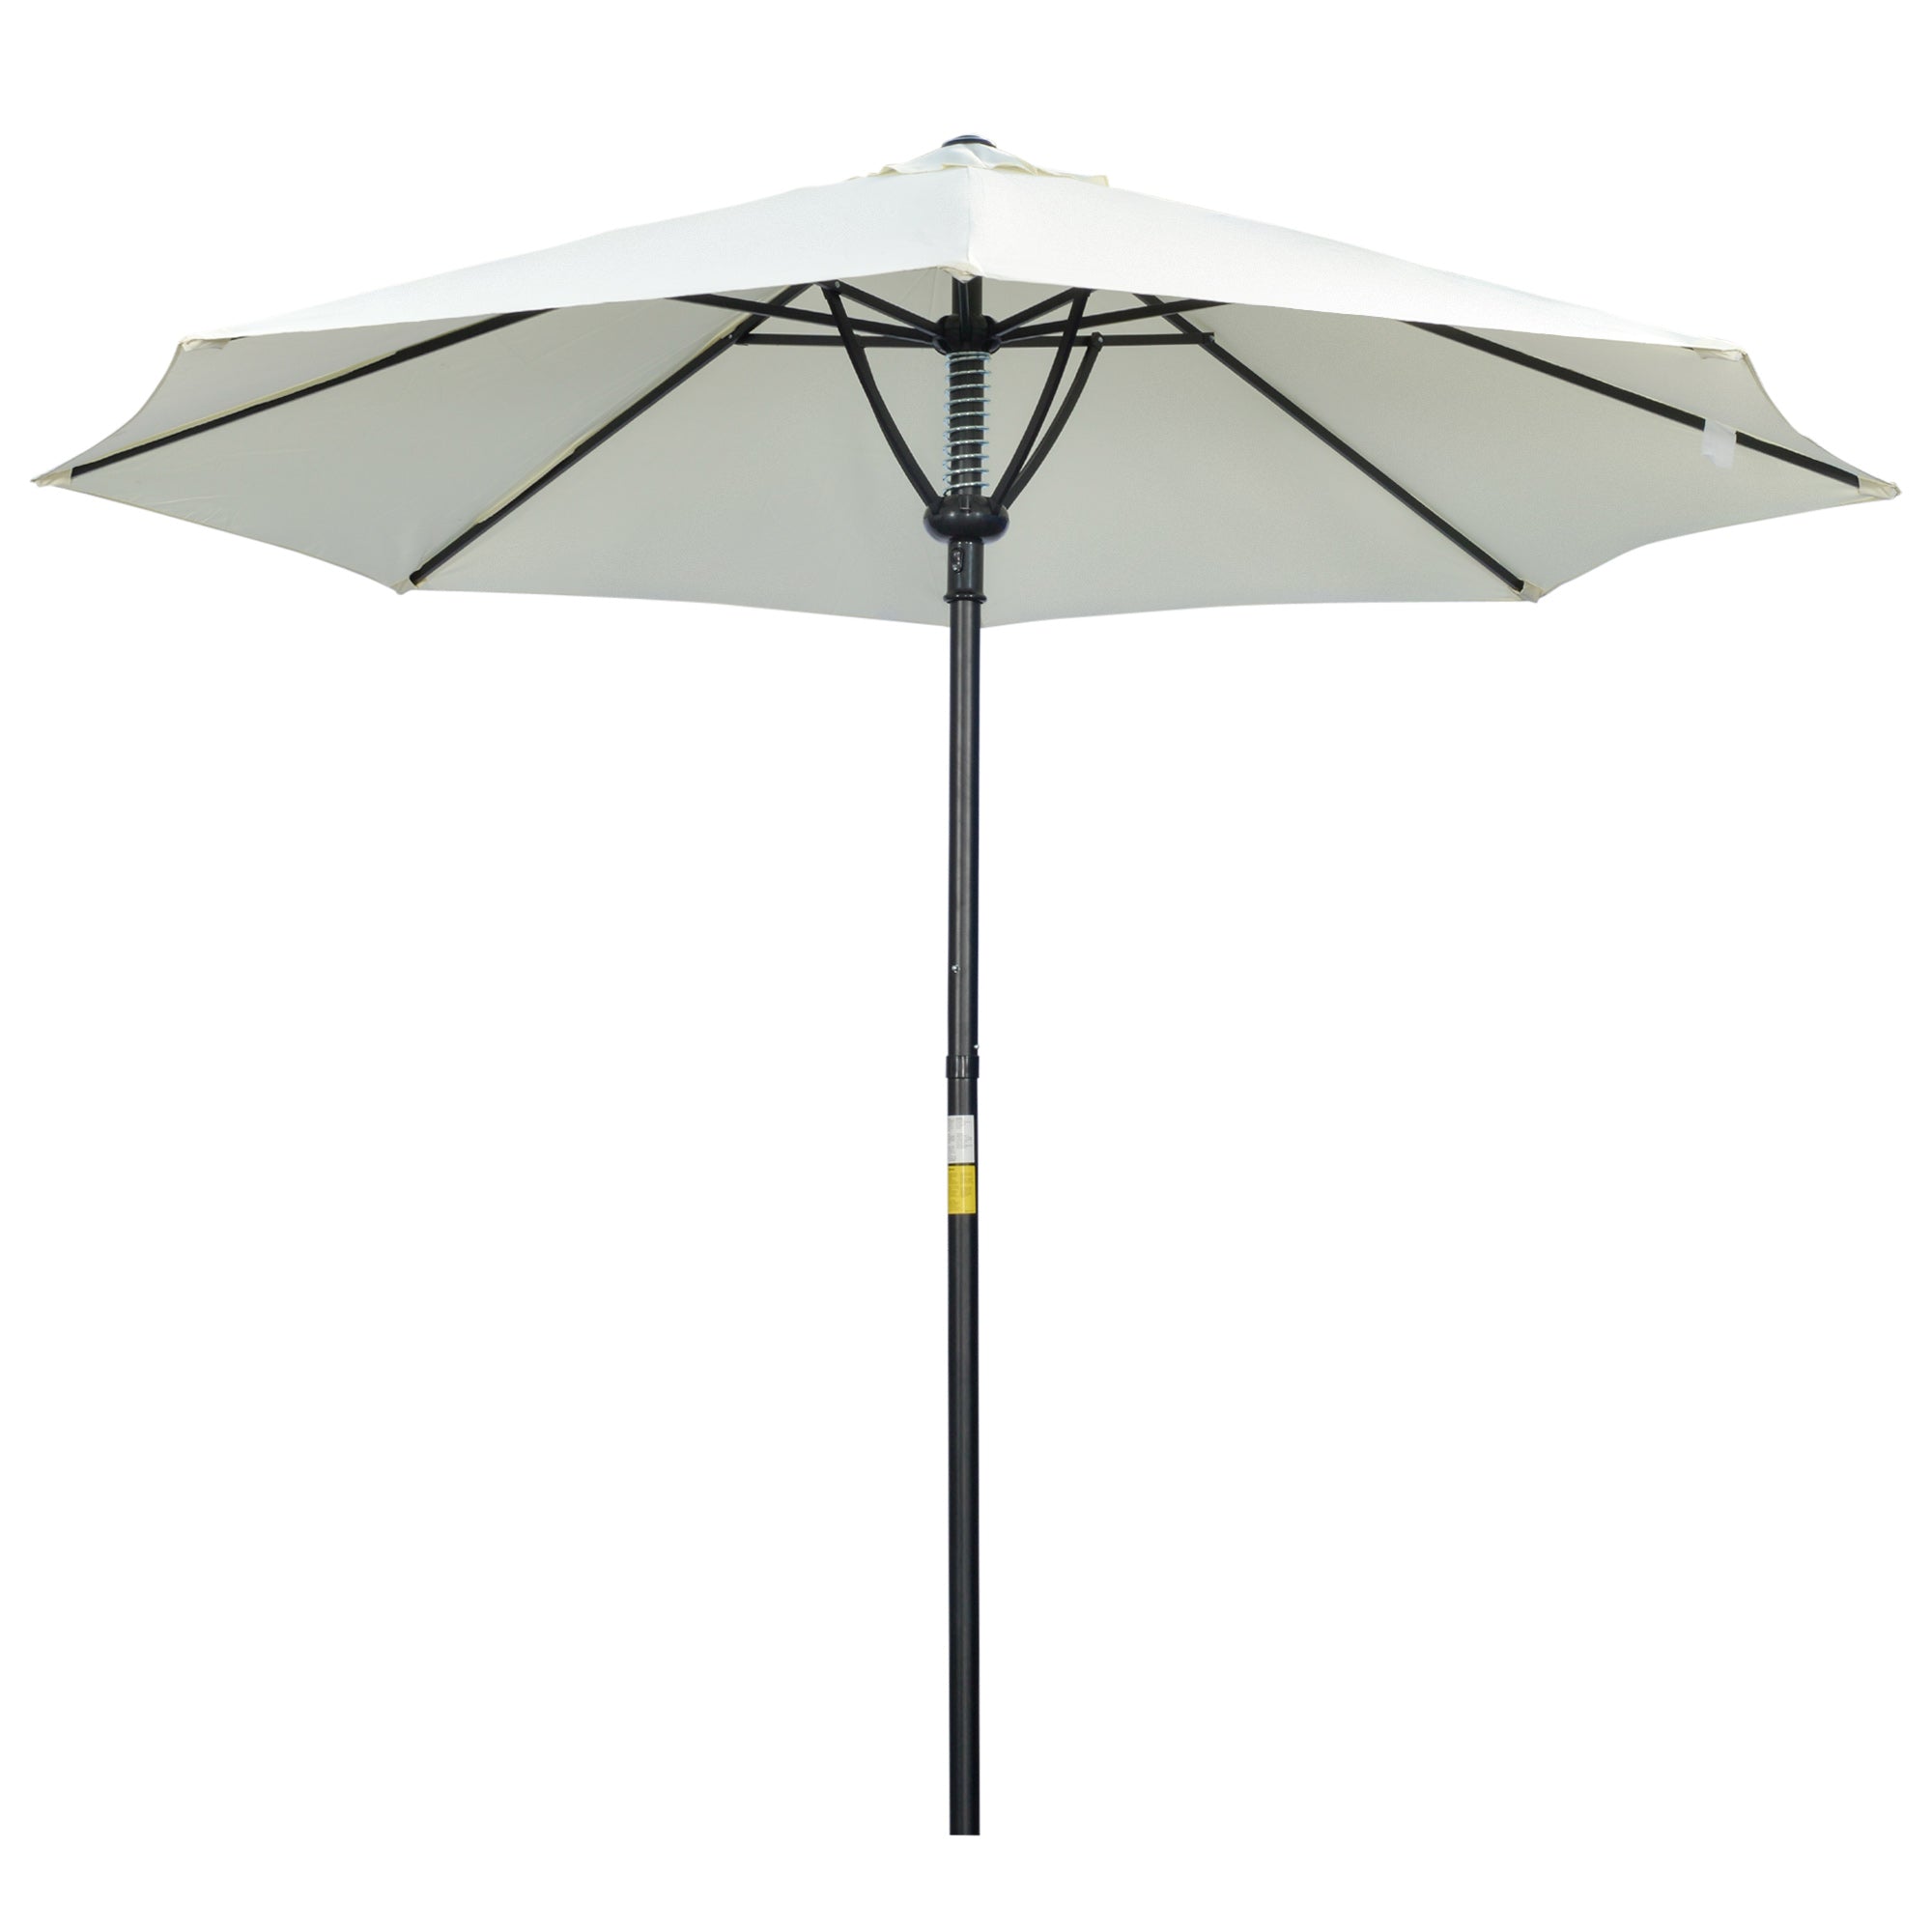 Outsunny Outdoor Market Table 3(m) Parasol Umbrella Sun Shade with 8 Ribs - Cream  | TJ Hughes